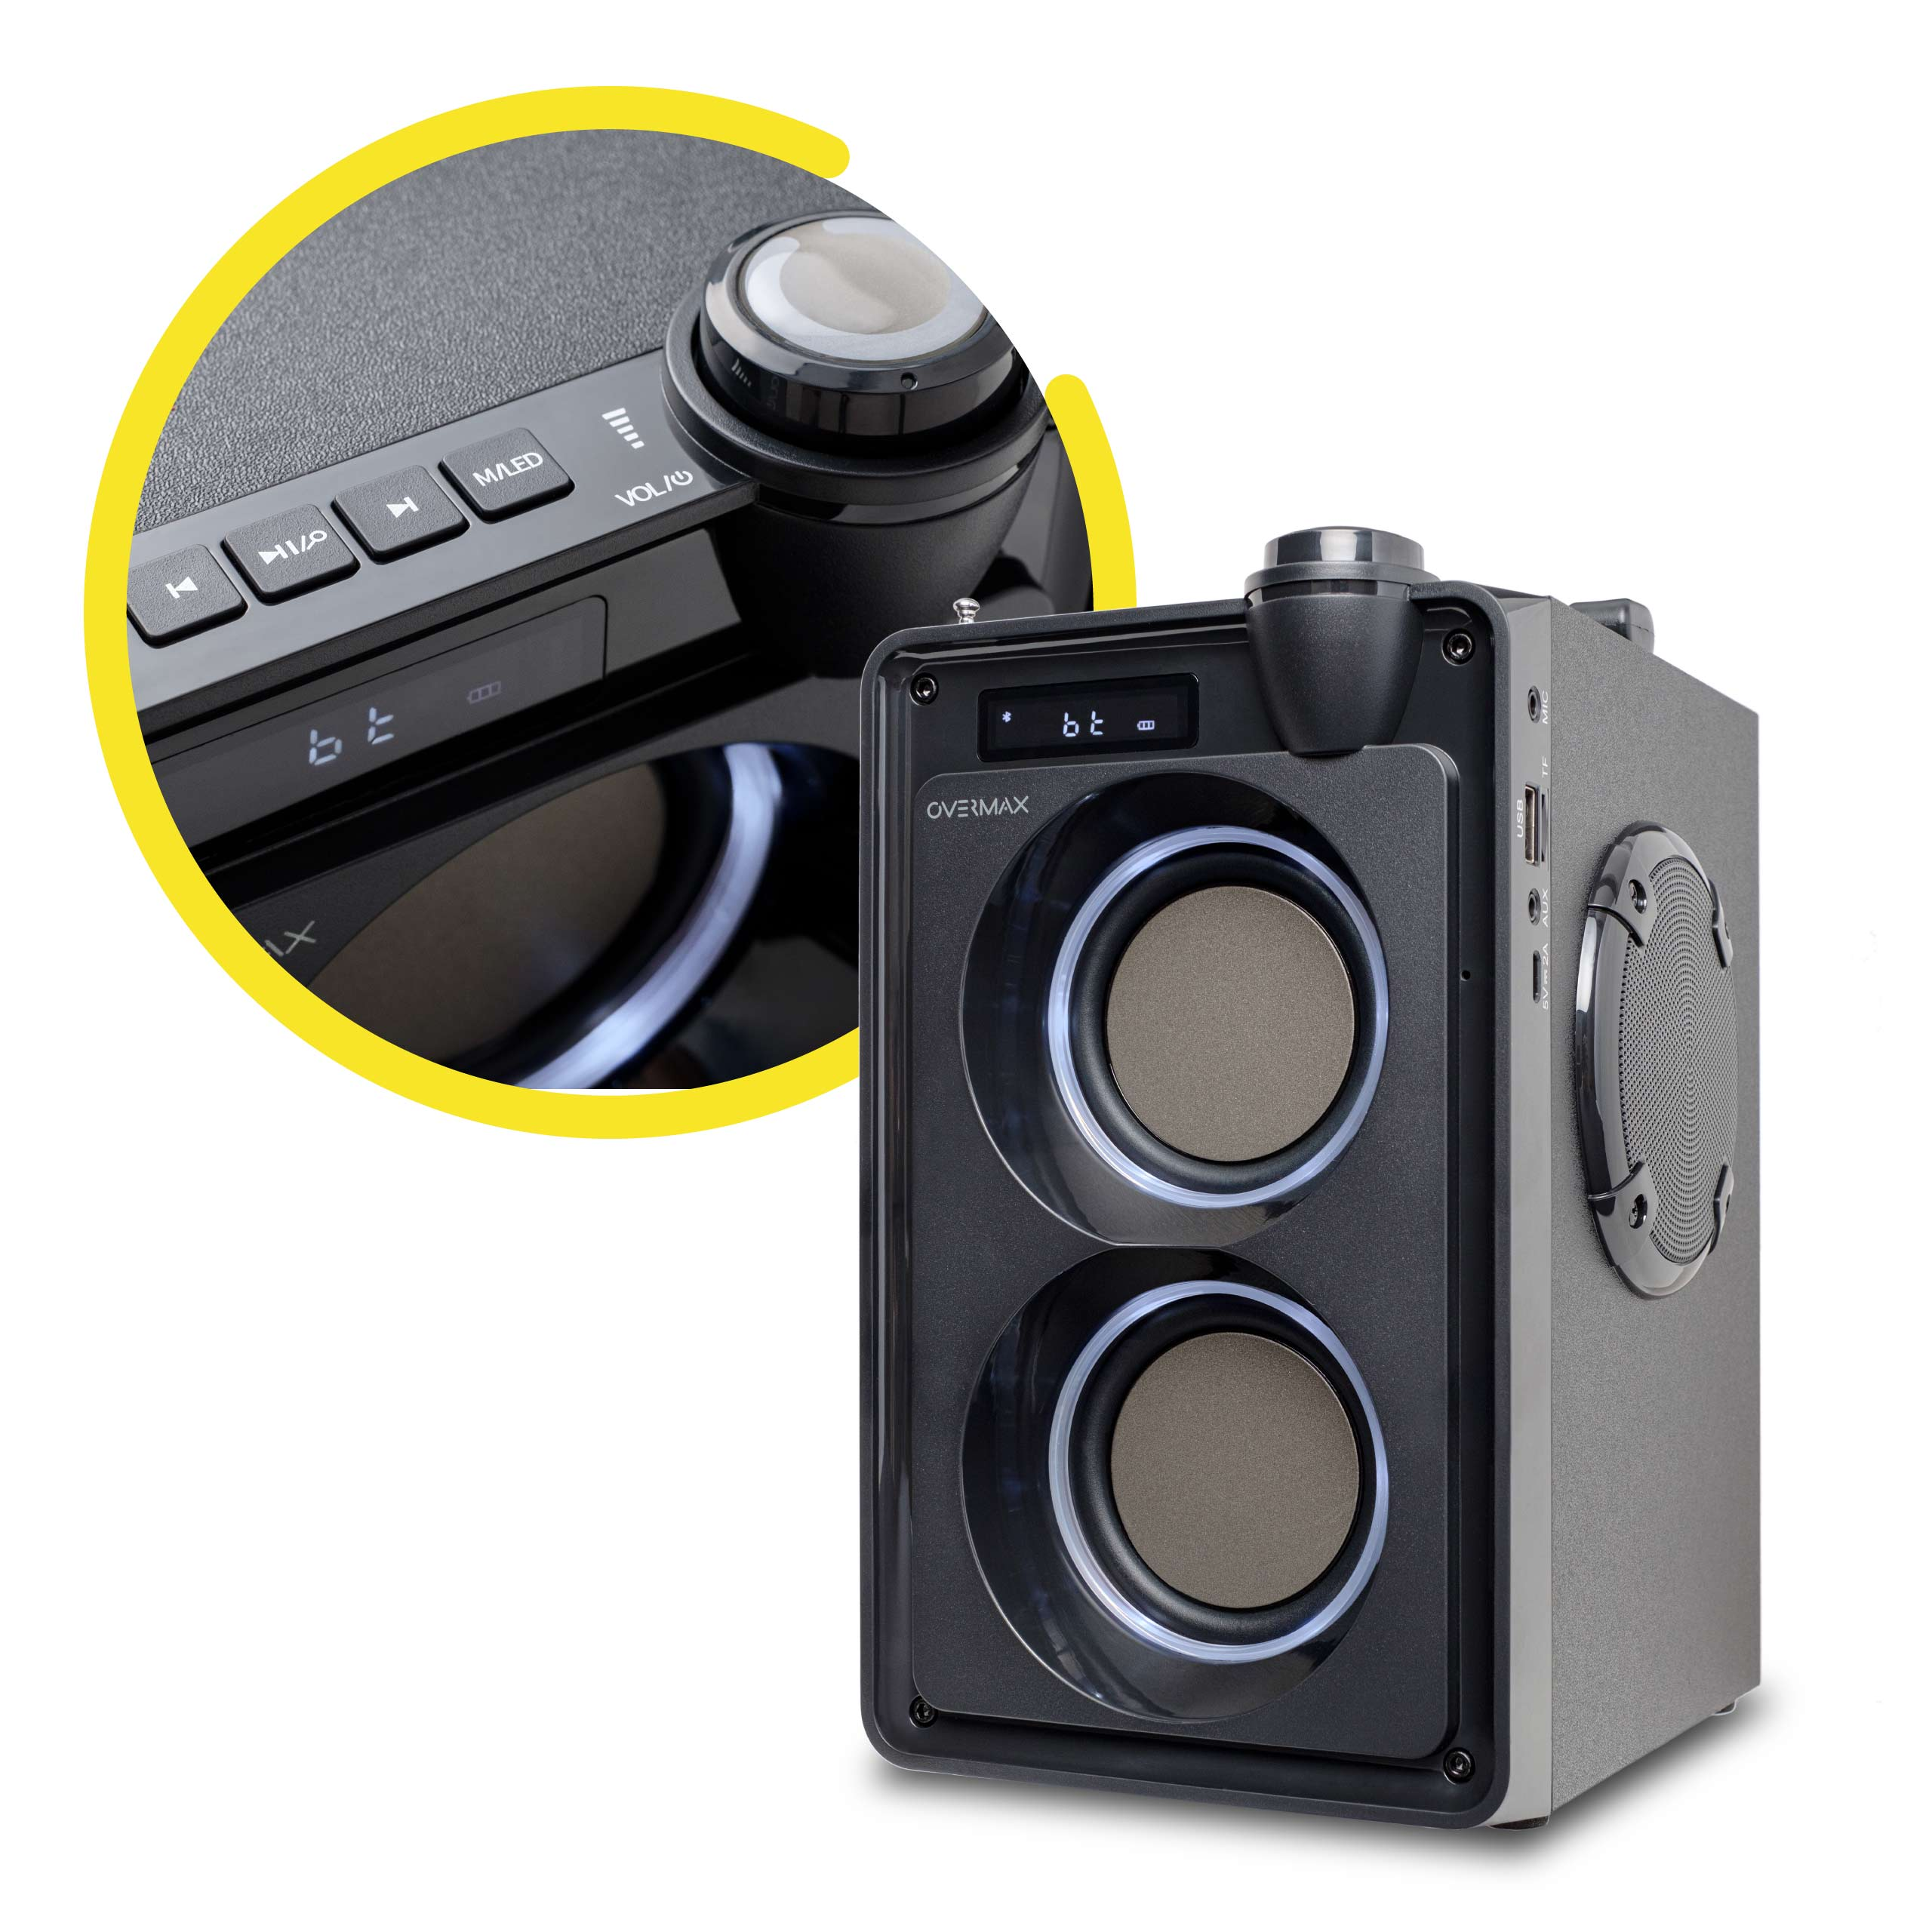 OVERMAX SOUNBEAT 5.0 Bluetooth Lautsprecher, Schwarz